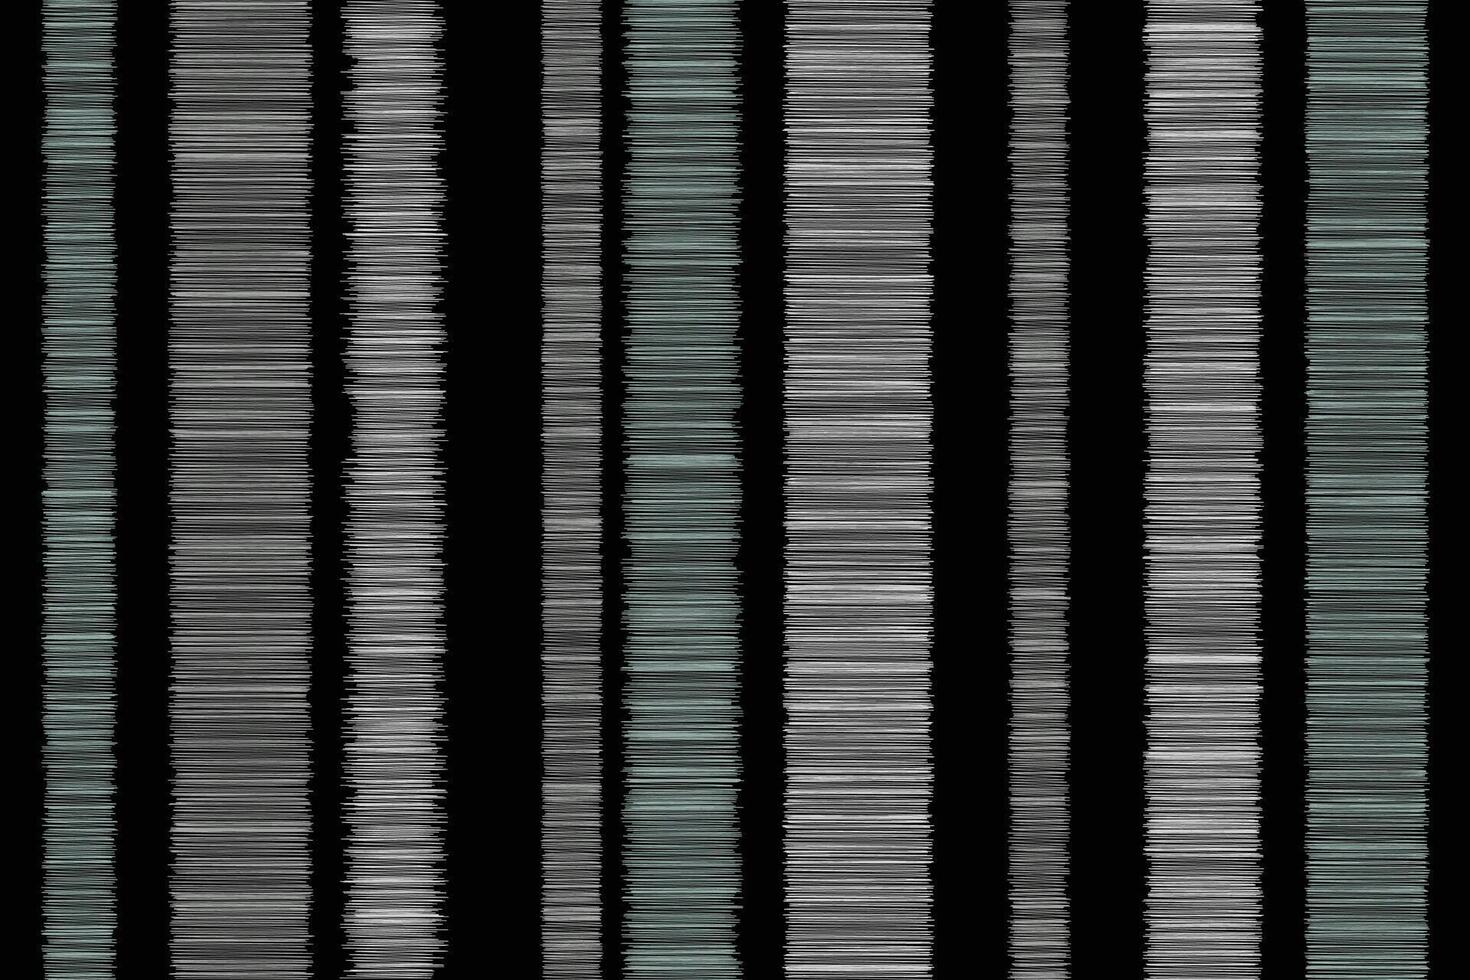 nahtlos süß Ikat Muster Vektor schwarz grau Hintergrund Stoff Aquarell Streifen süß Streifen schwarz grau Farbe Gitter Streifen Tartan Hintergrund.